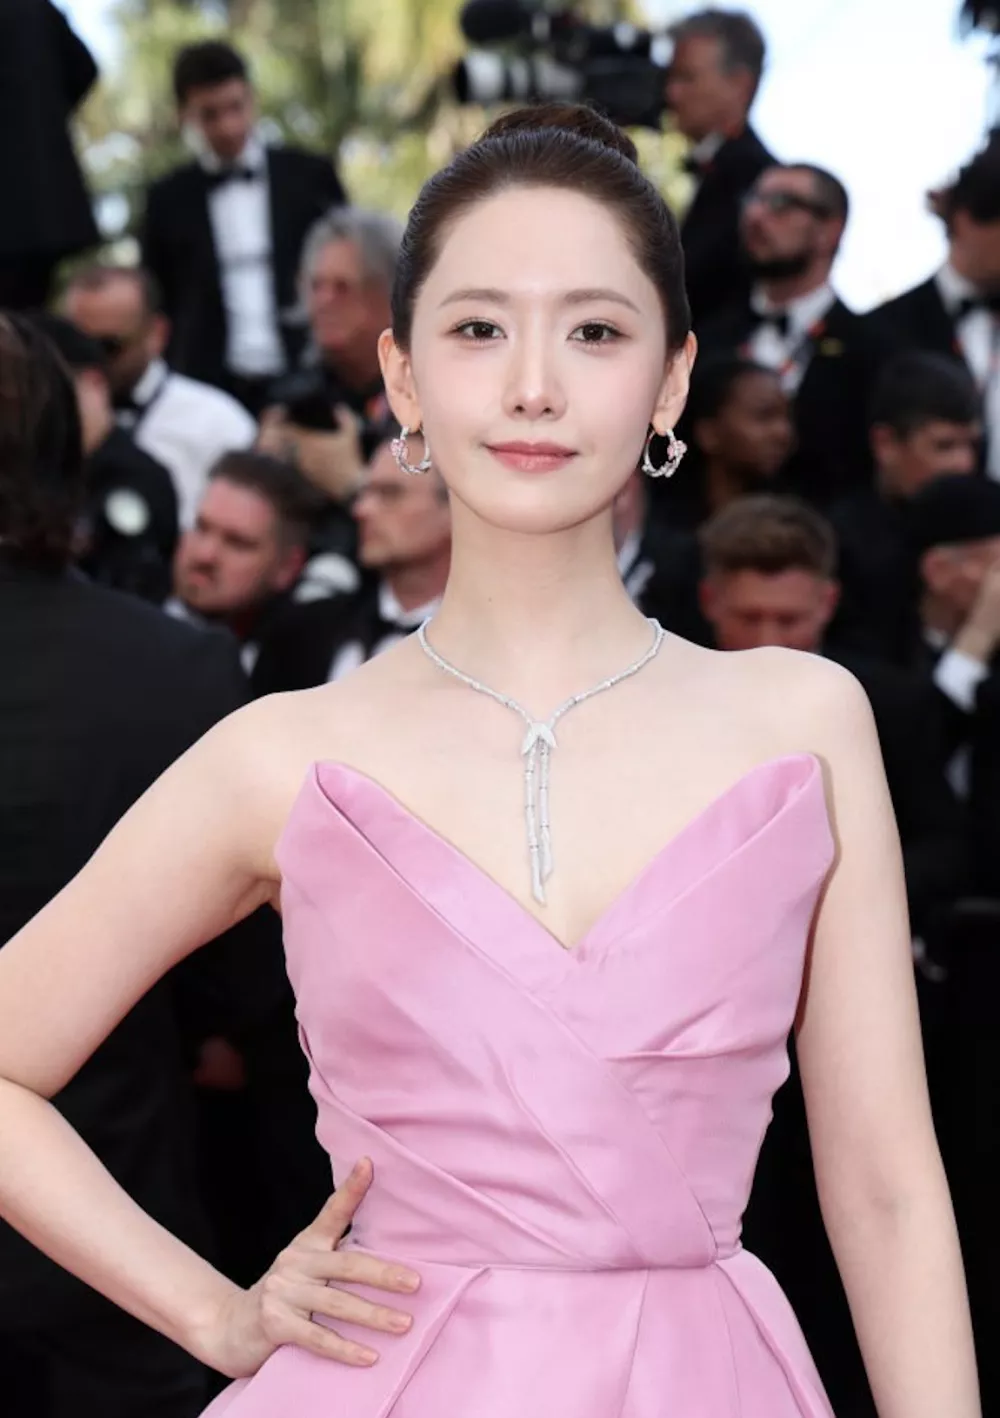 Юна появилась на красной дорожке Каннского кинофестиваля в образе "Розовой богини"